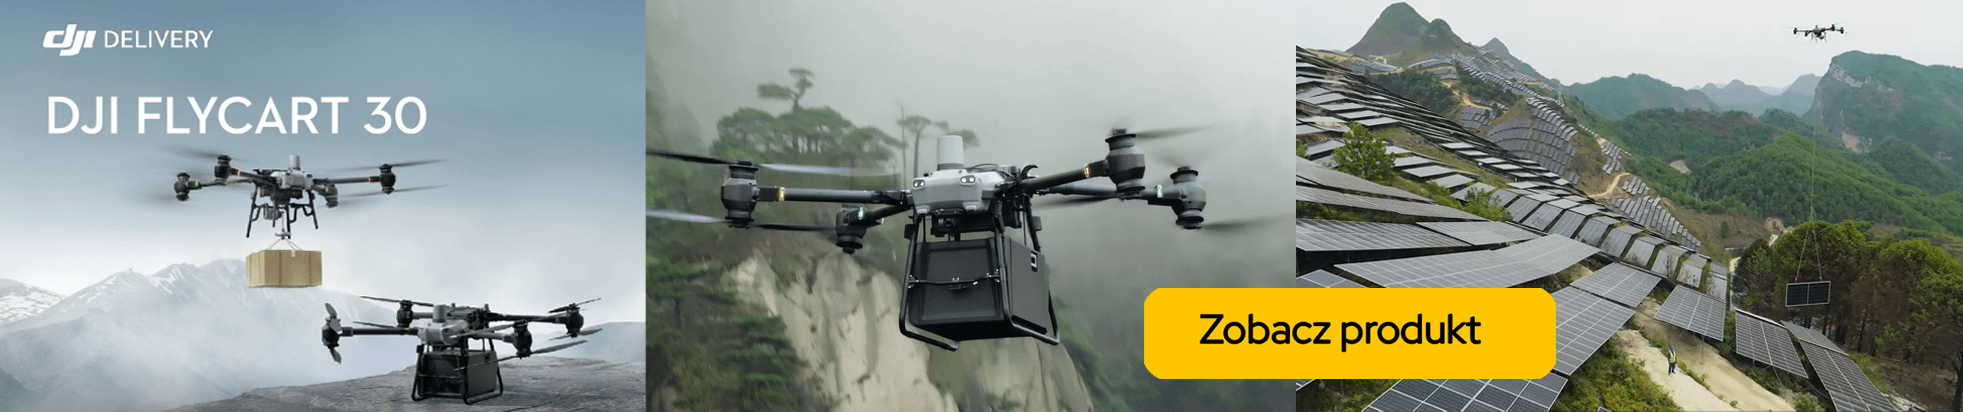 DJI FlyCart 30 dostawczy dron transportowy